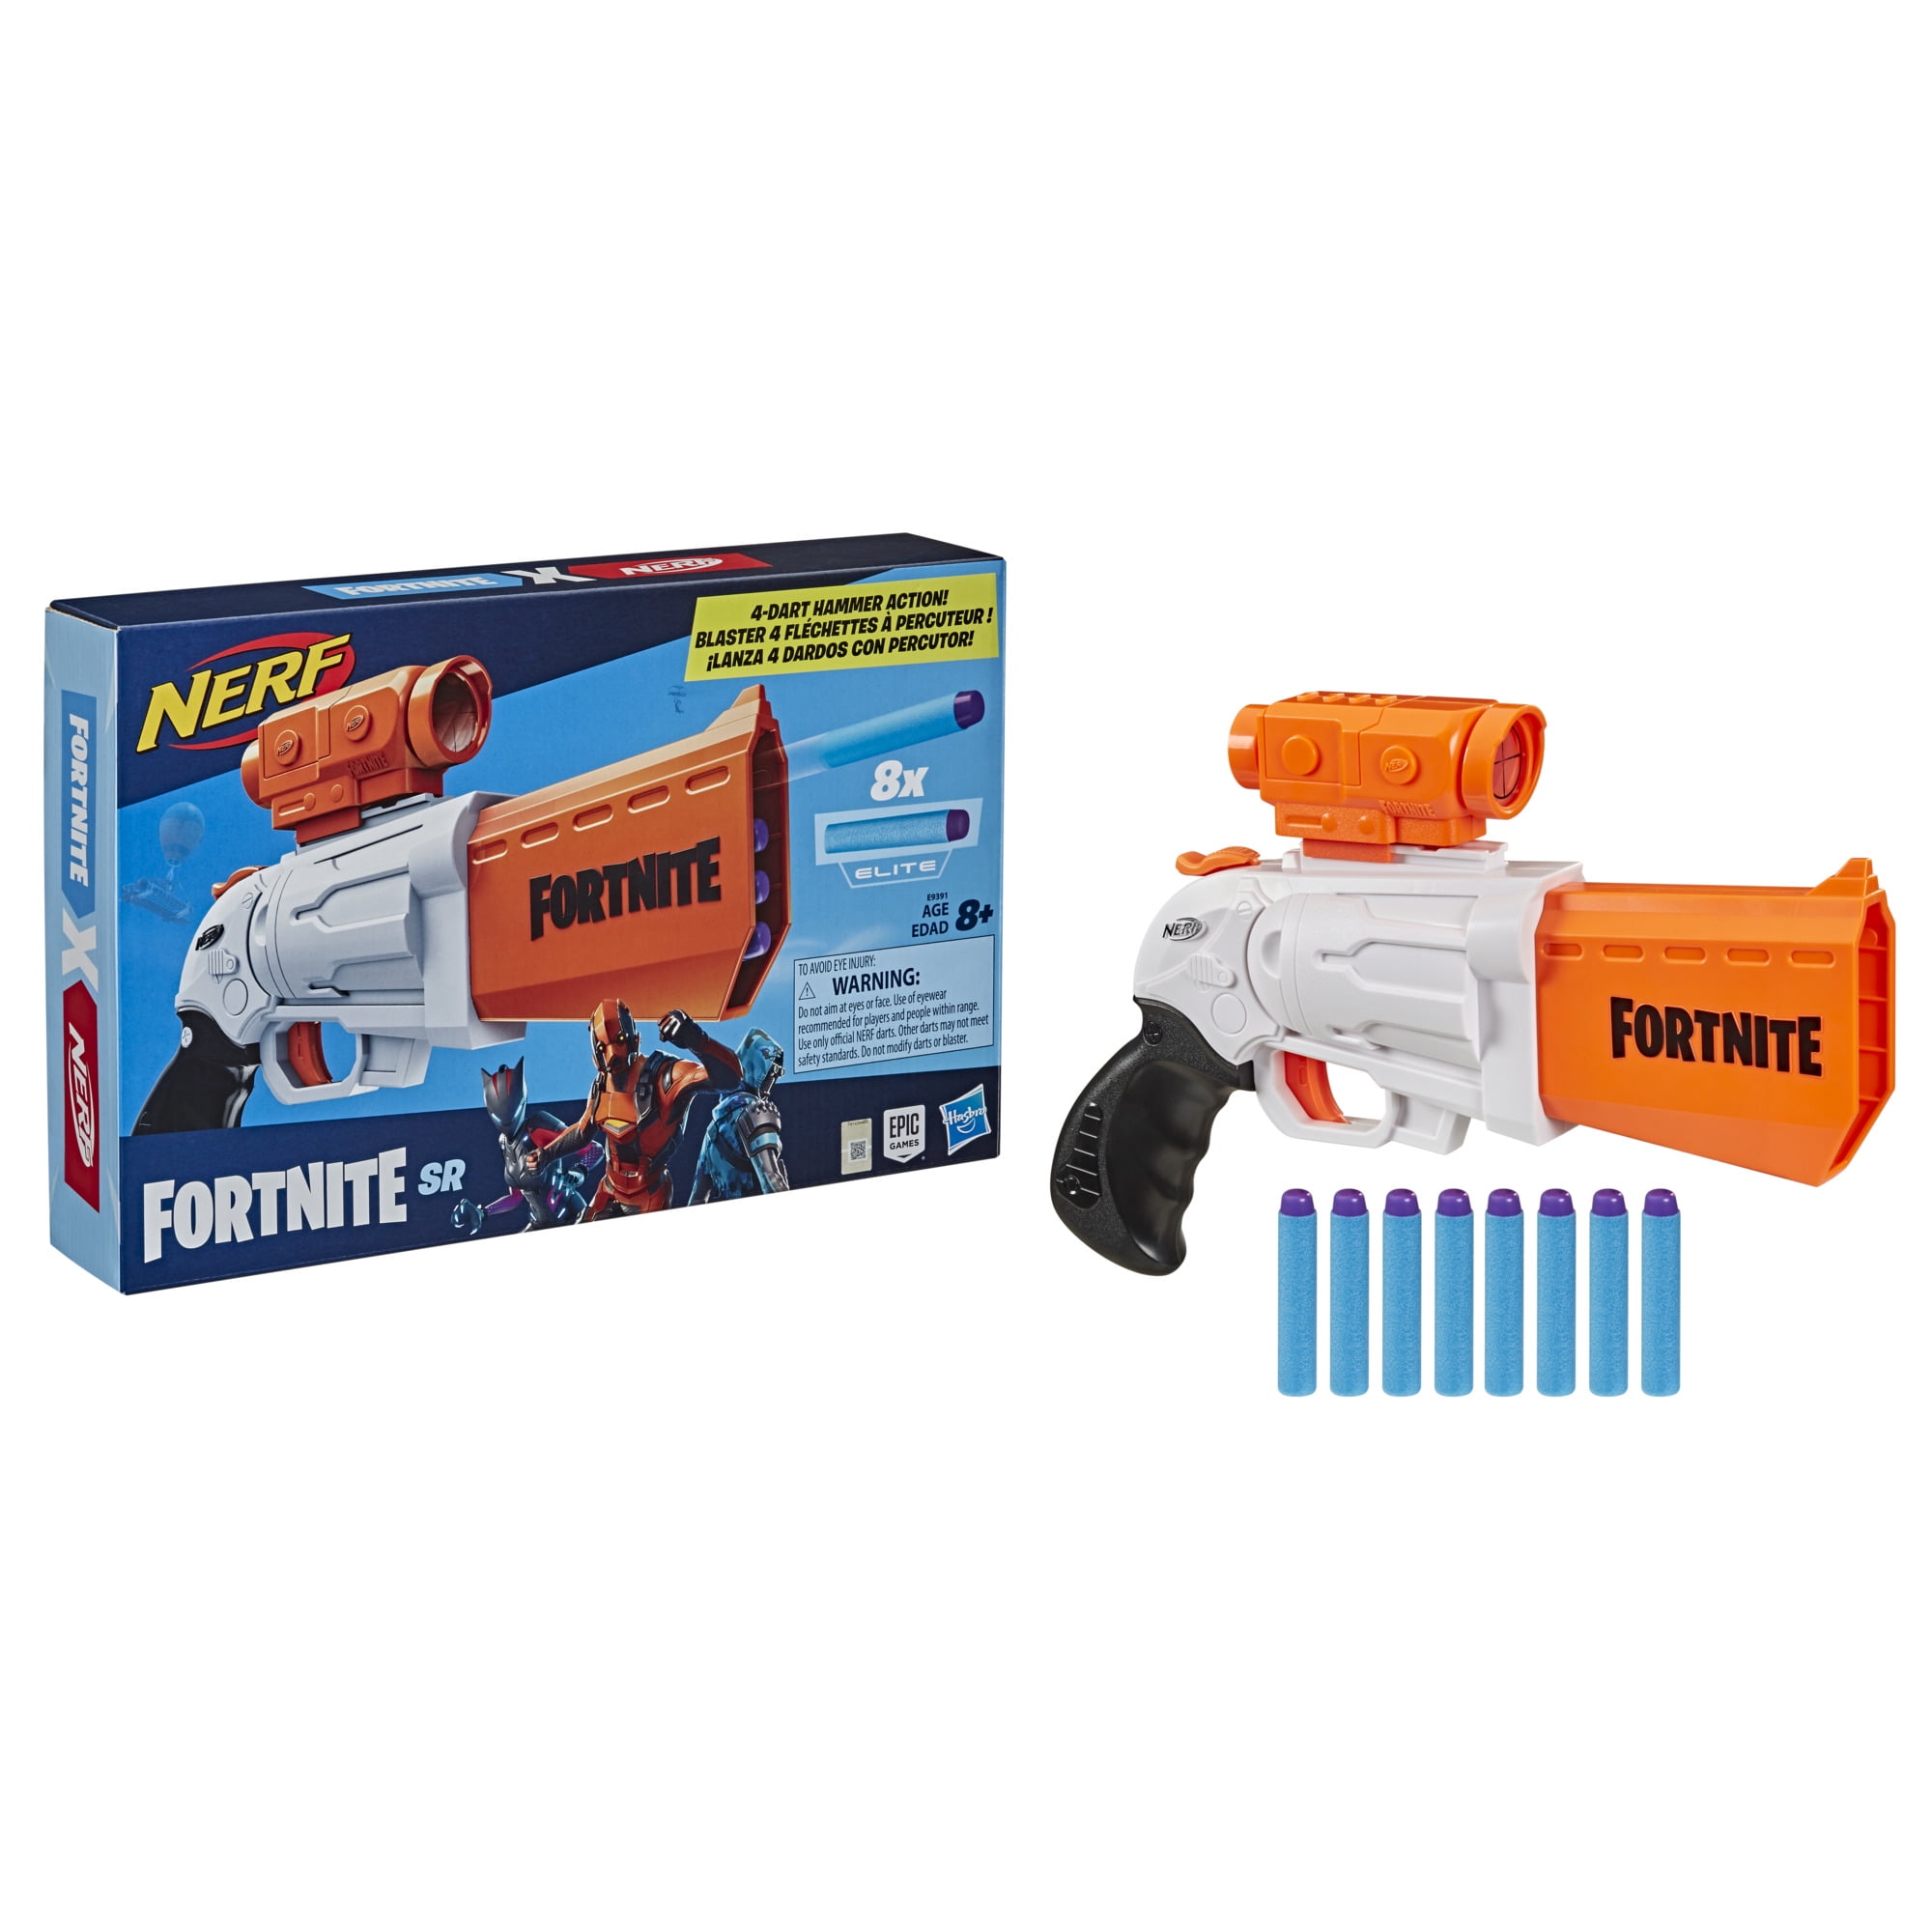 Nerf Fortnite SR Blaster, Includes Official Darts - Walmart.com